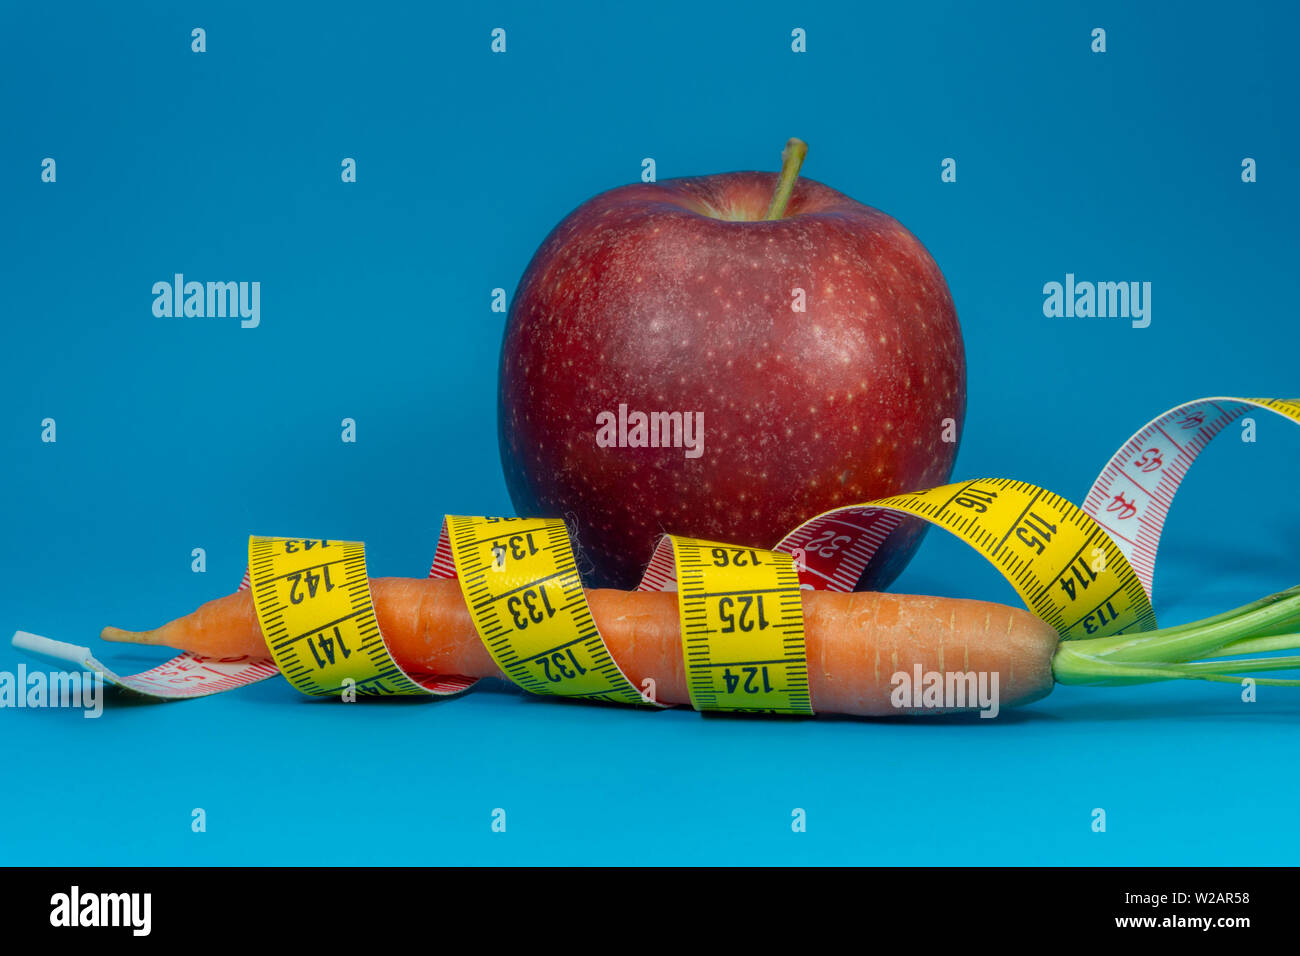 La perte de poids et régime alimentaire sain concept avec un ruban à mesurer, de carotte et de pomme rouge sur fond bleu Banque D'Images